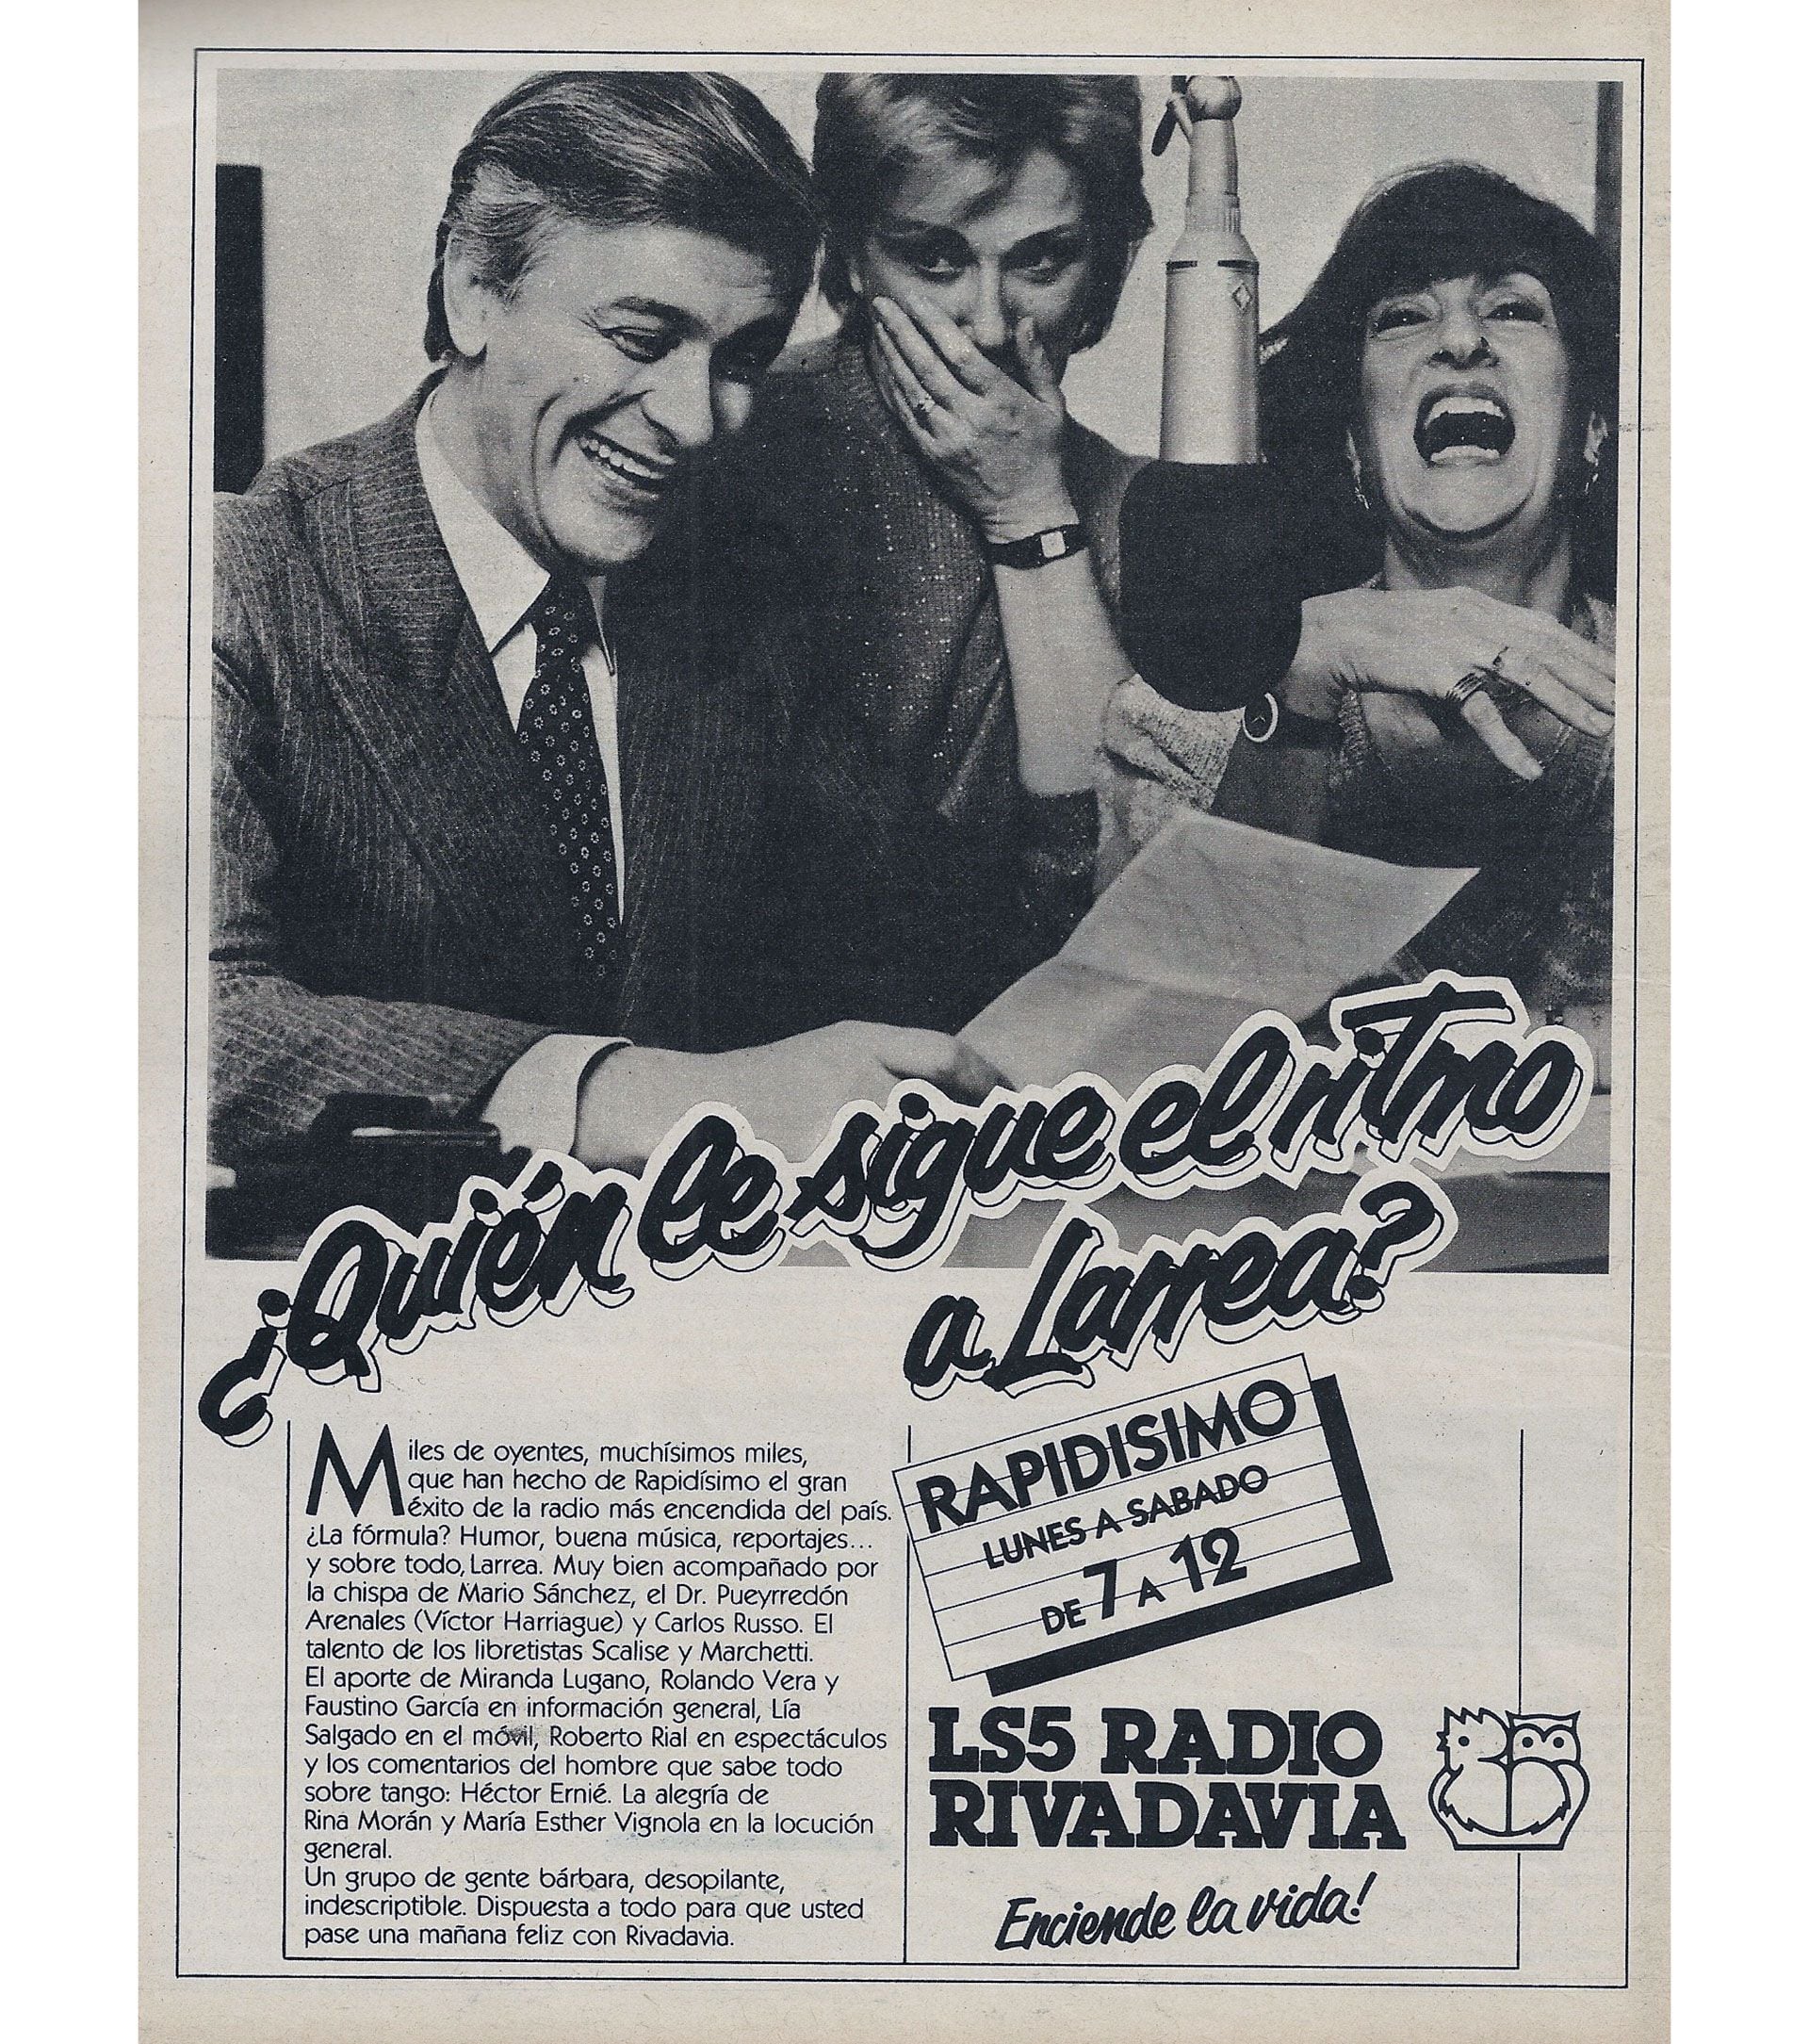 Una publicidad de Rapidísimo, de Héctor Larrea, destacando el ritmo del locutor